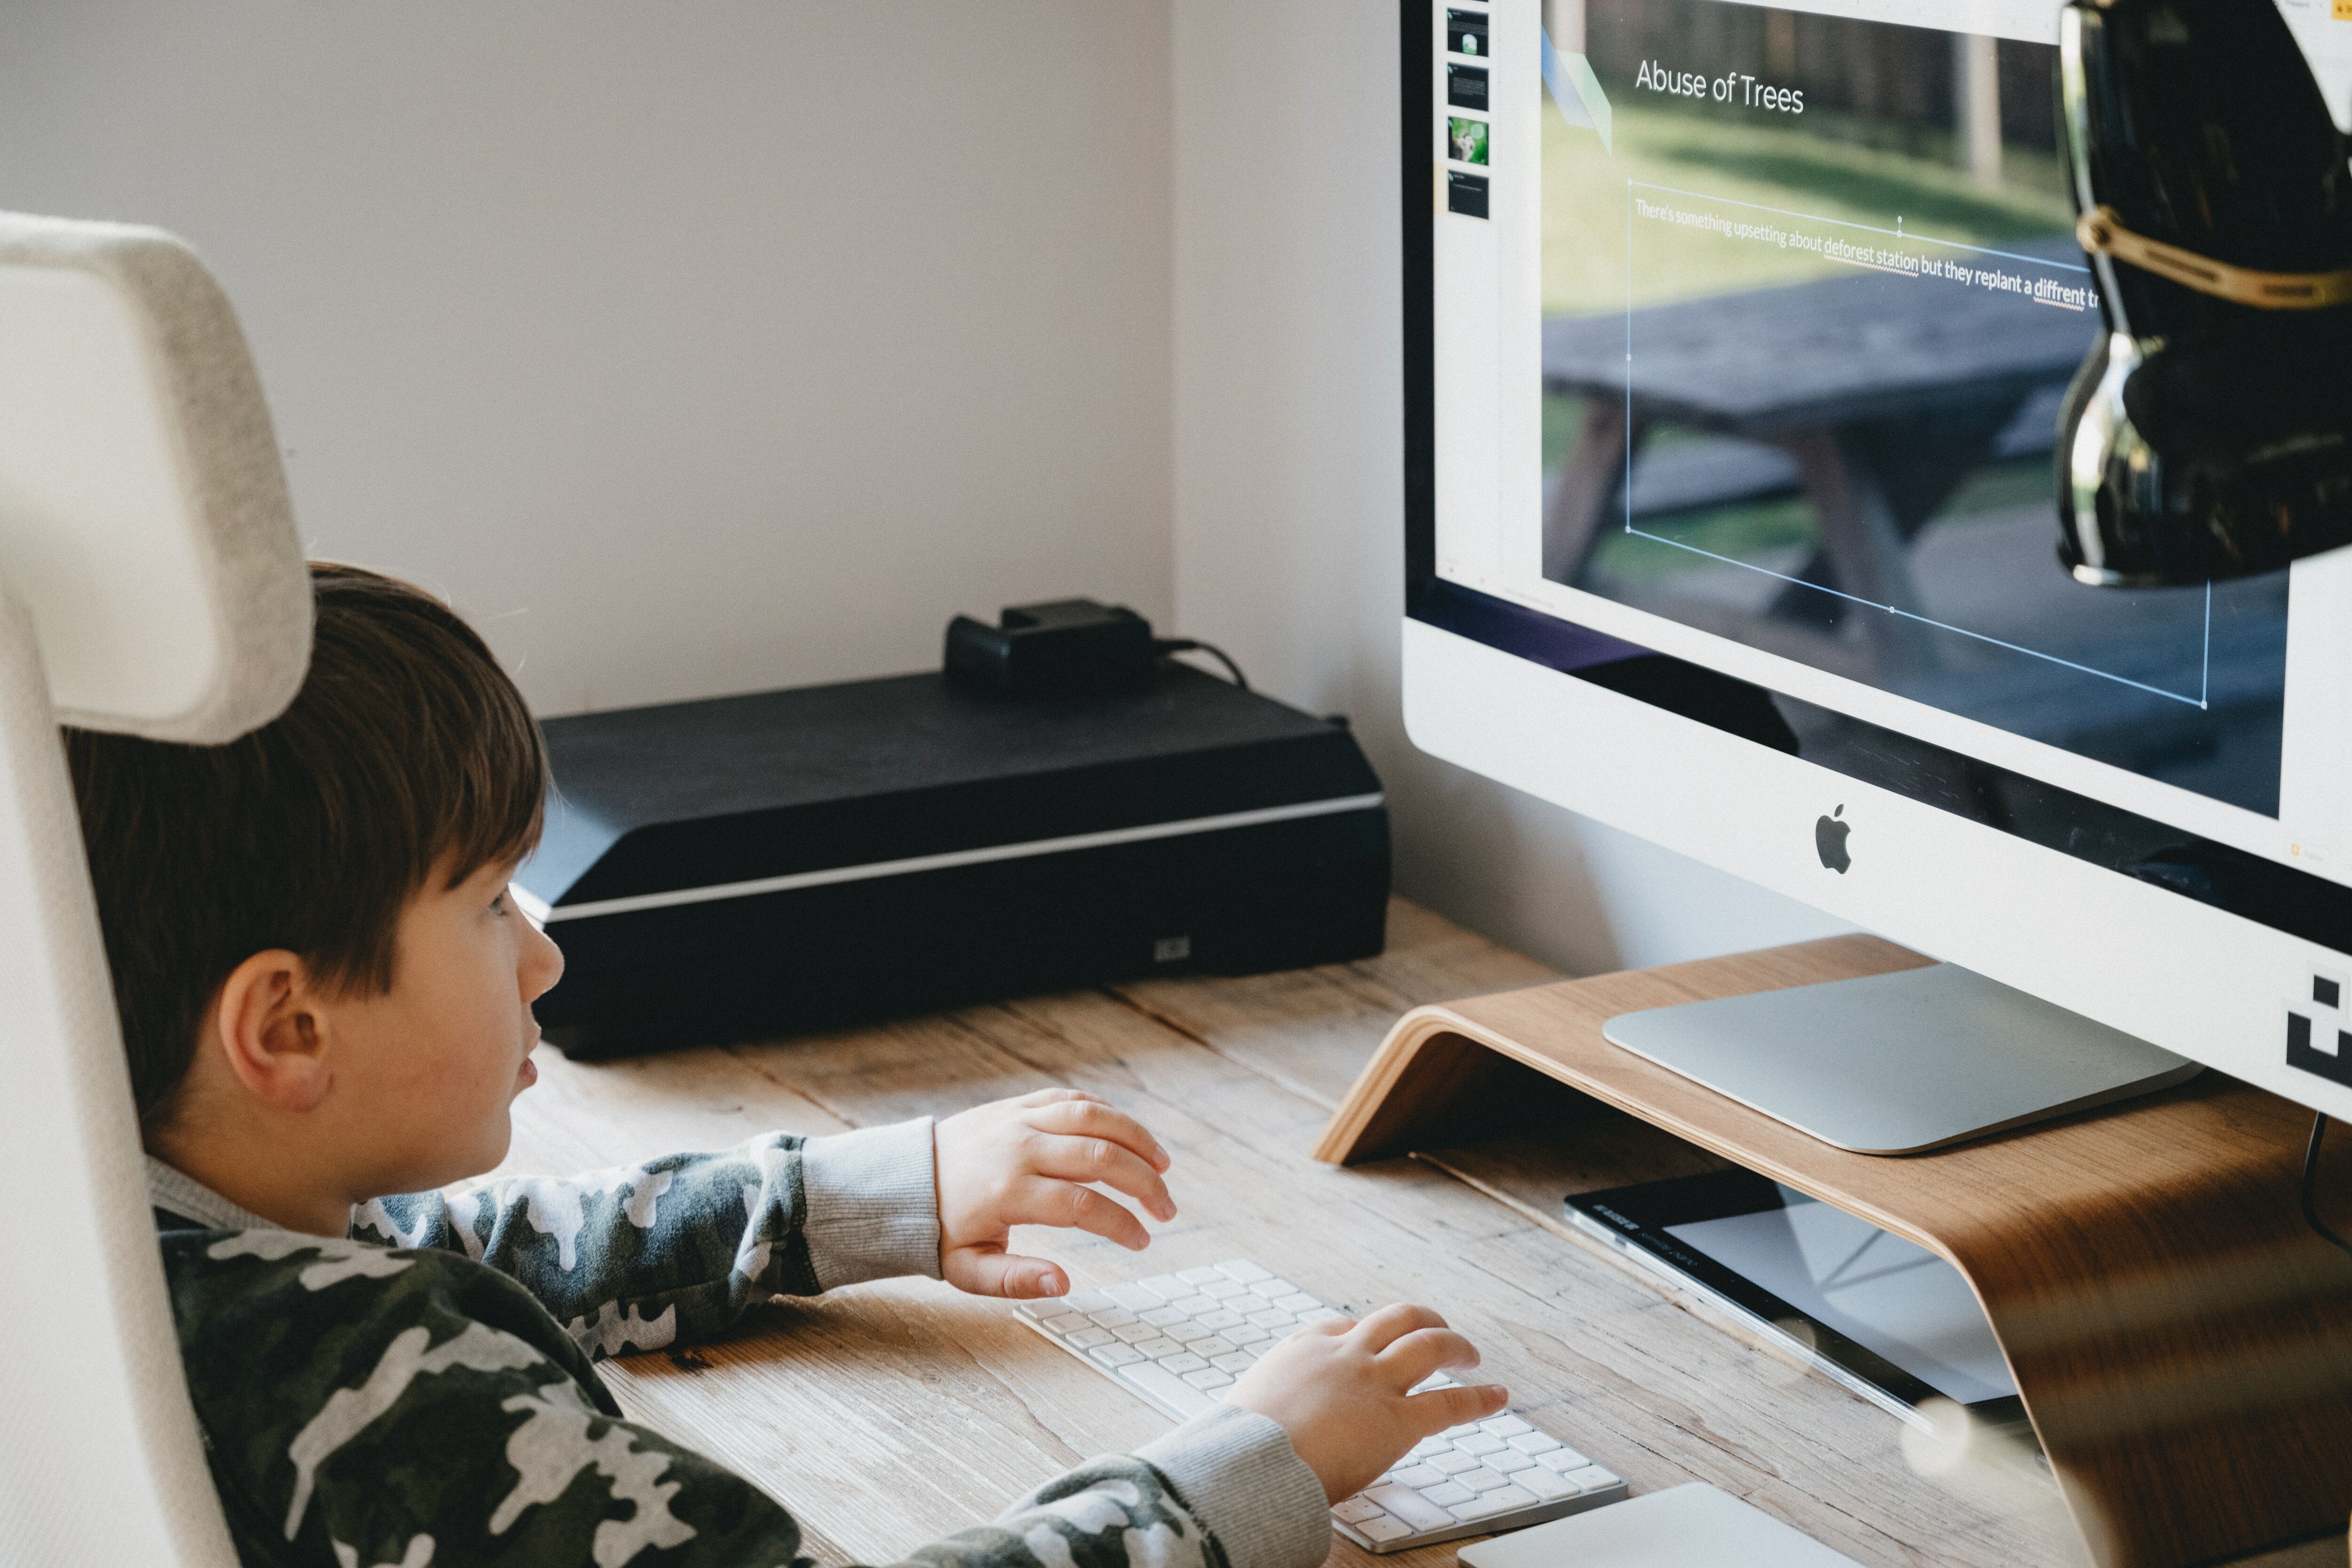 A child using a desktop